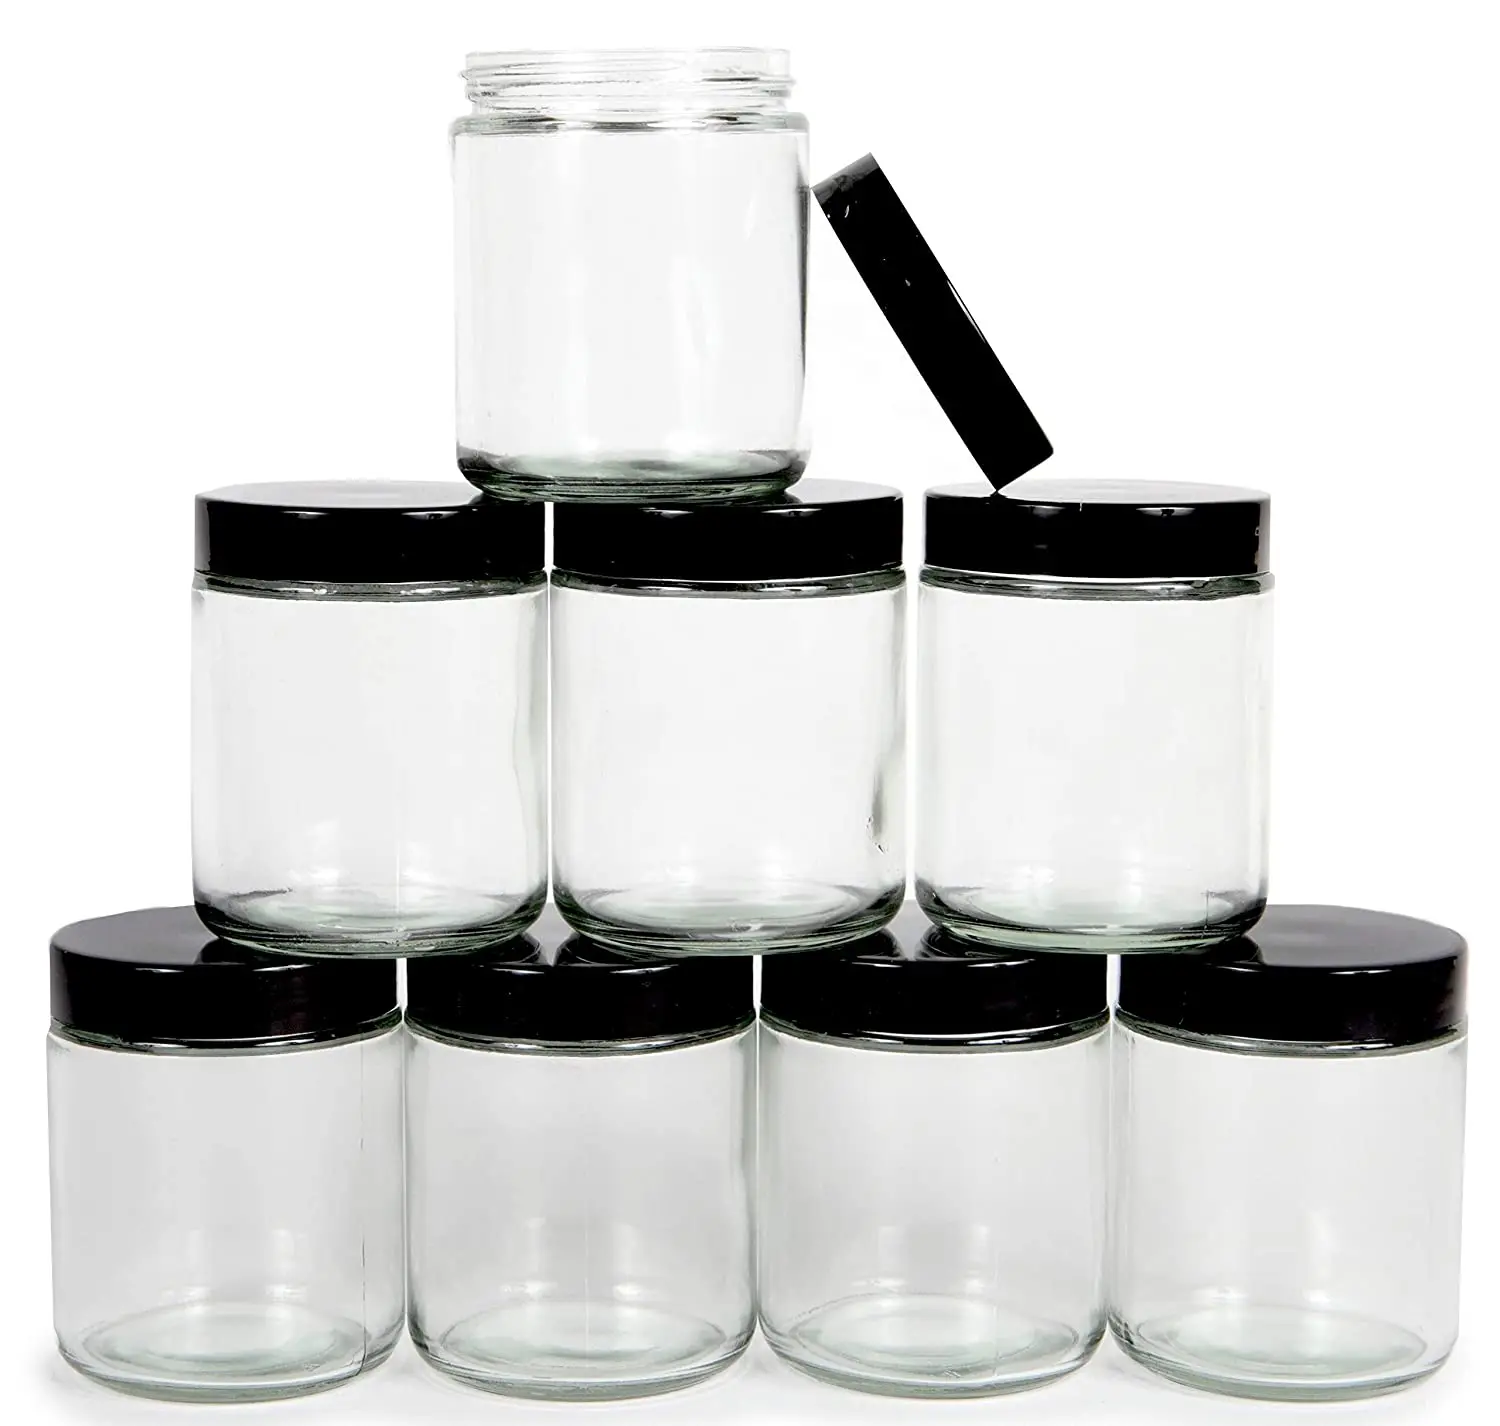 经典宽口8盎司250毫升300毫升食品级透明玻璃罐,用于蜂蜜和布丁